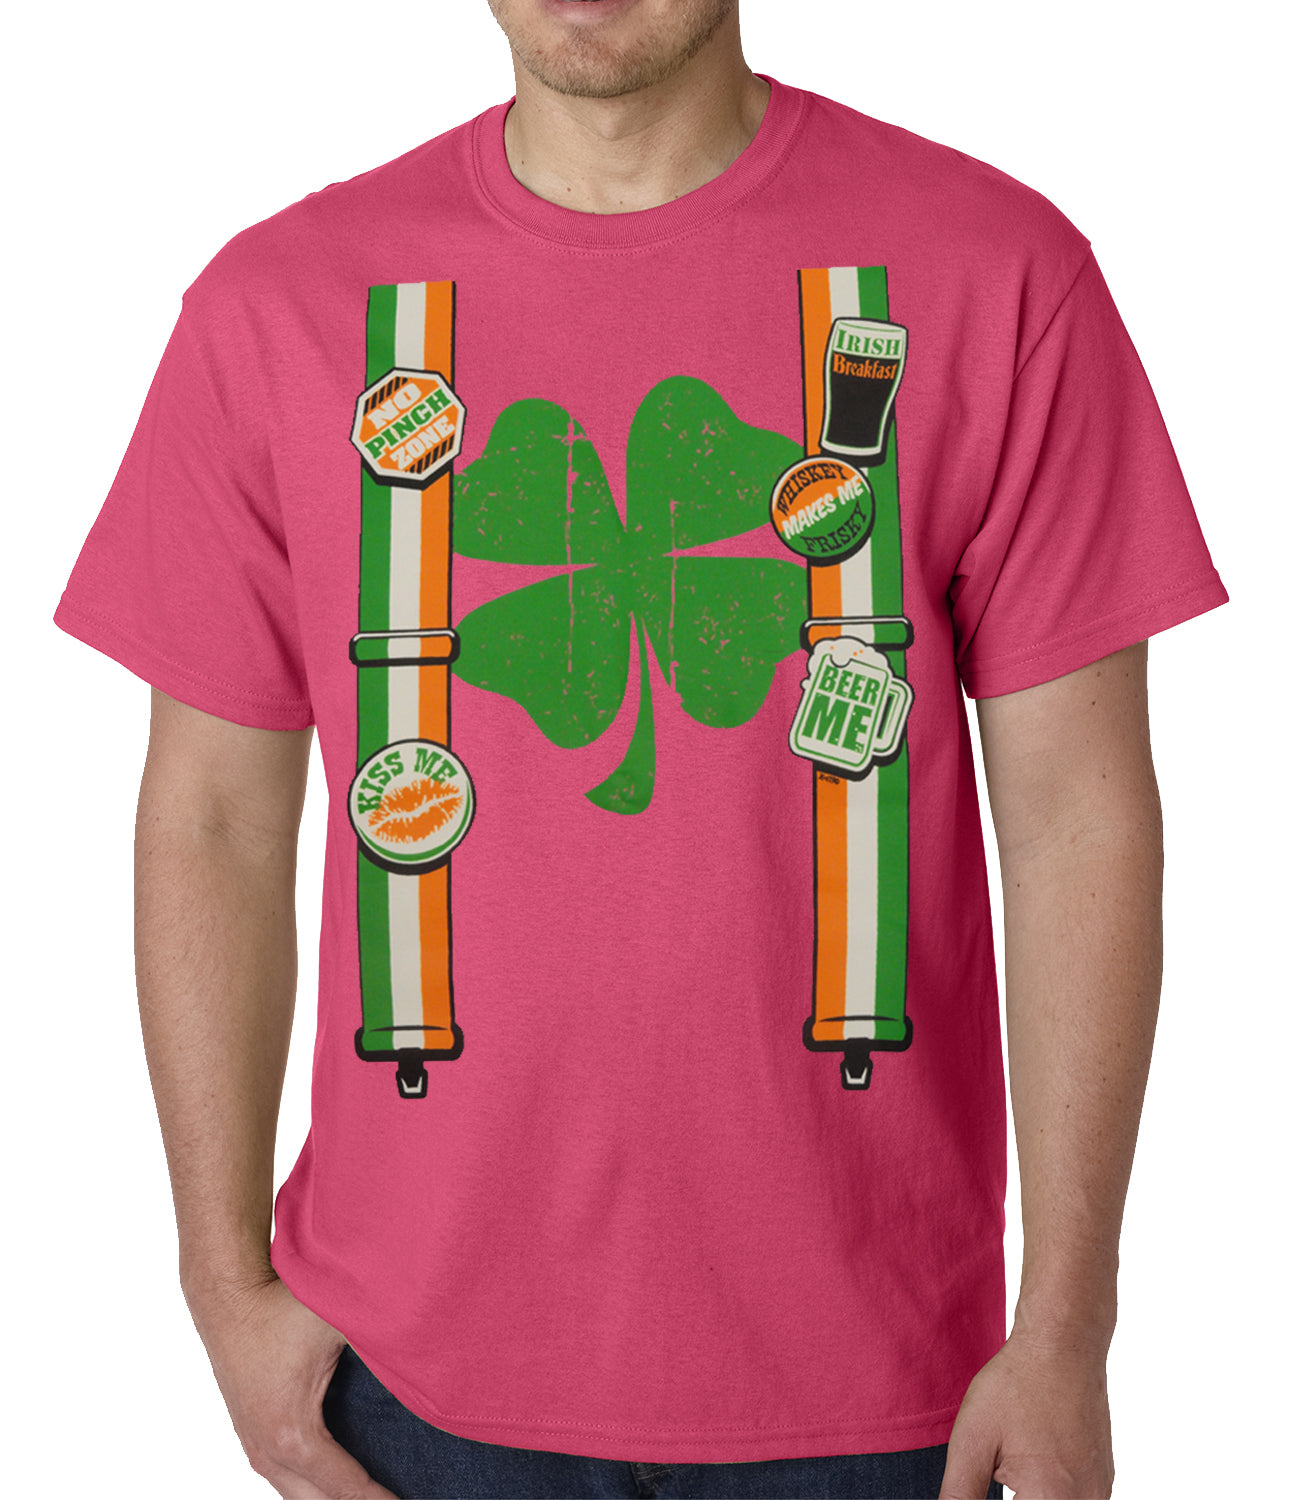 Suspenders with Shamrock Irish Costume Mens T-shirt